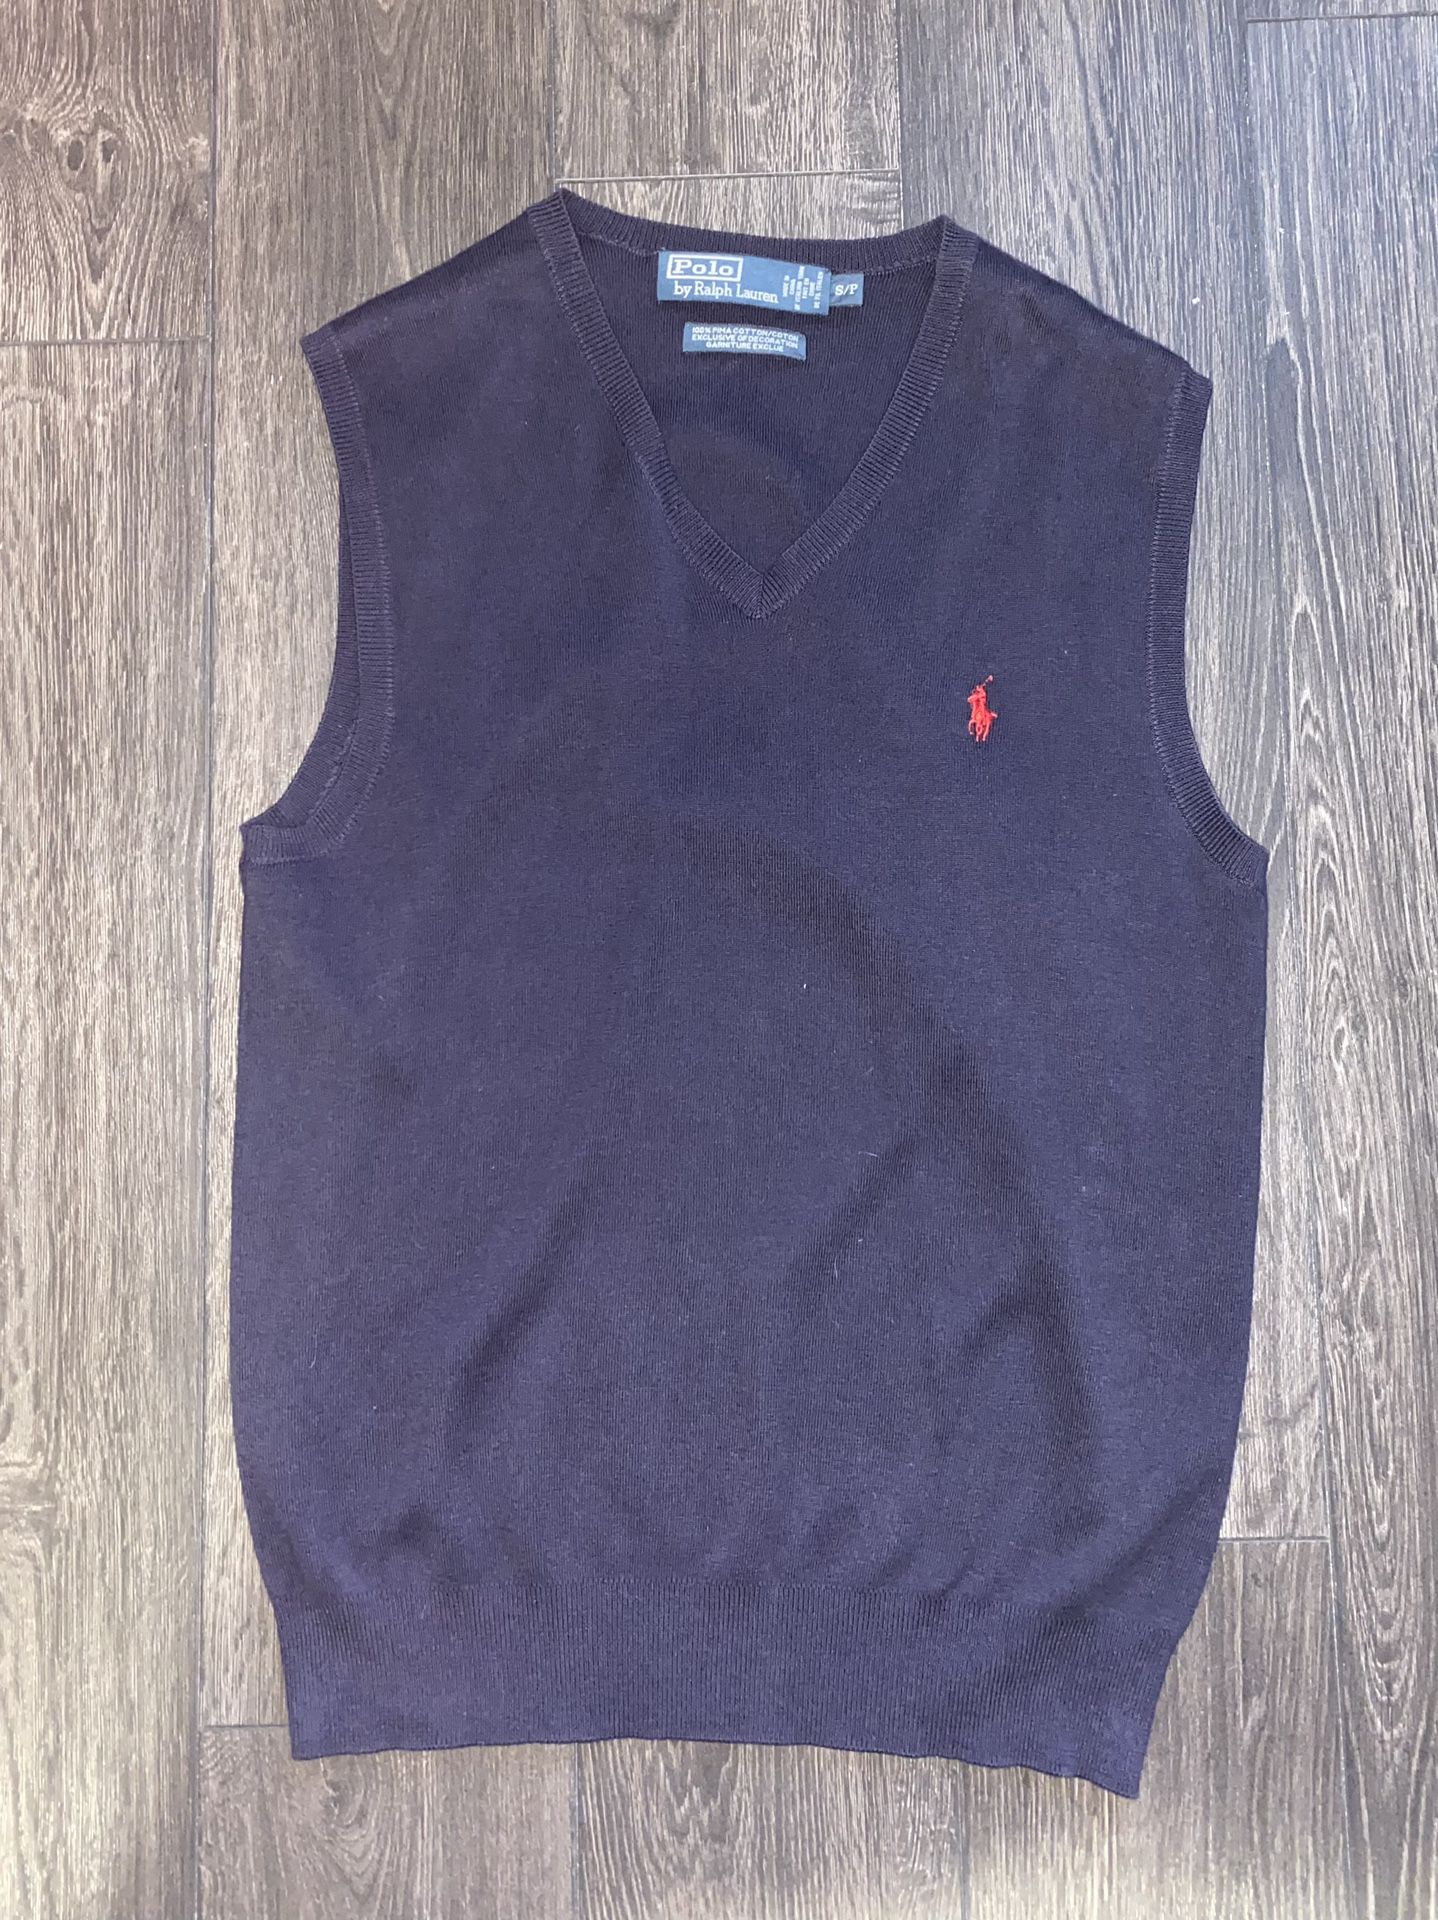 Ralph Lauren Men’s Size small Sweater Vest